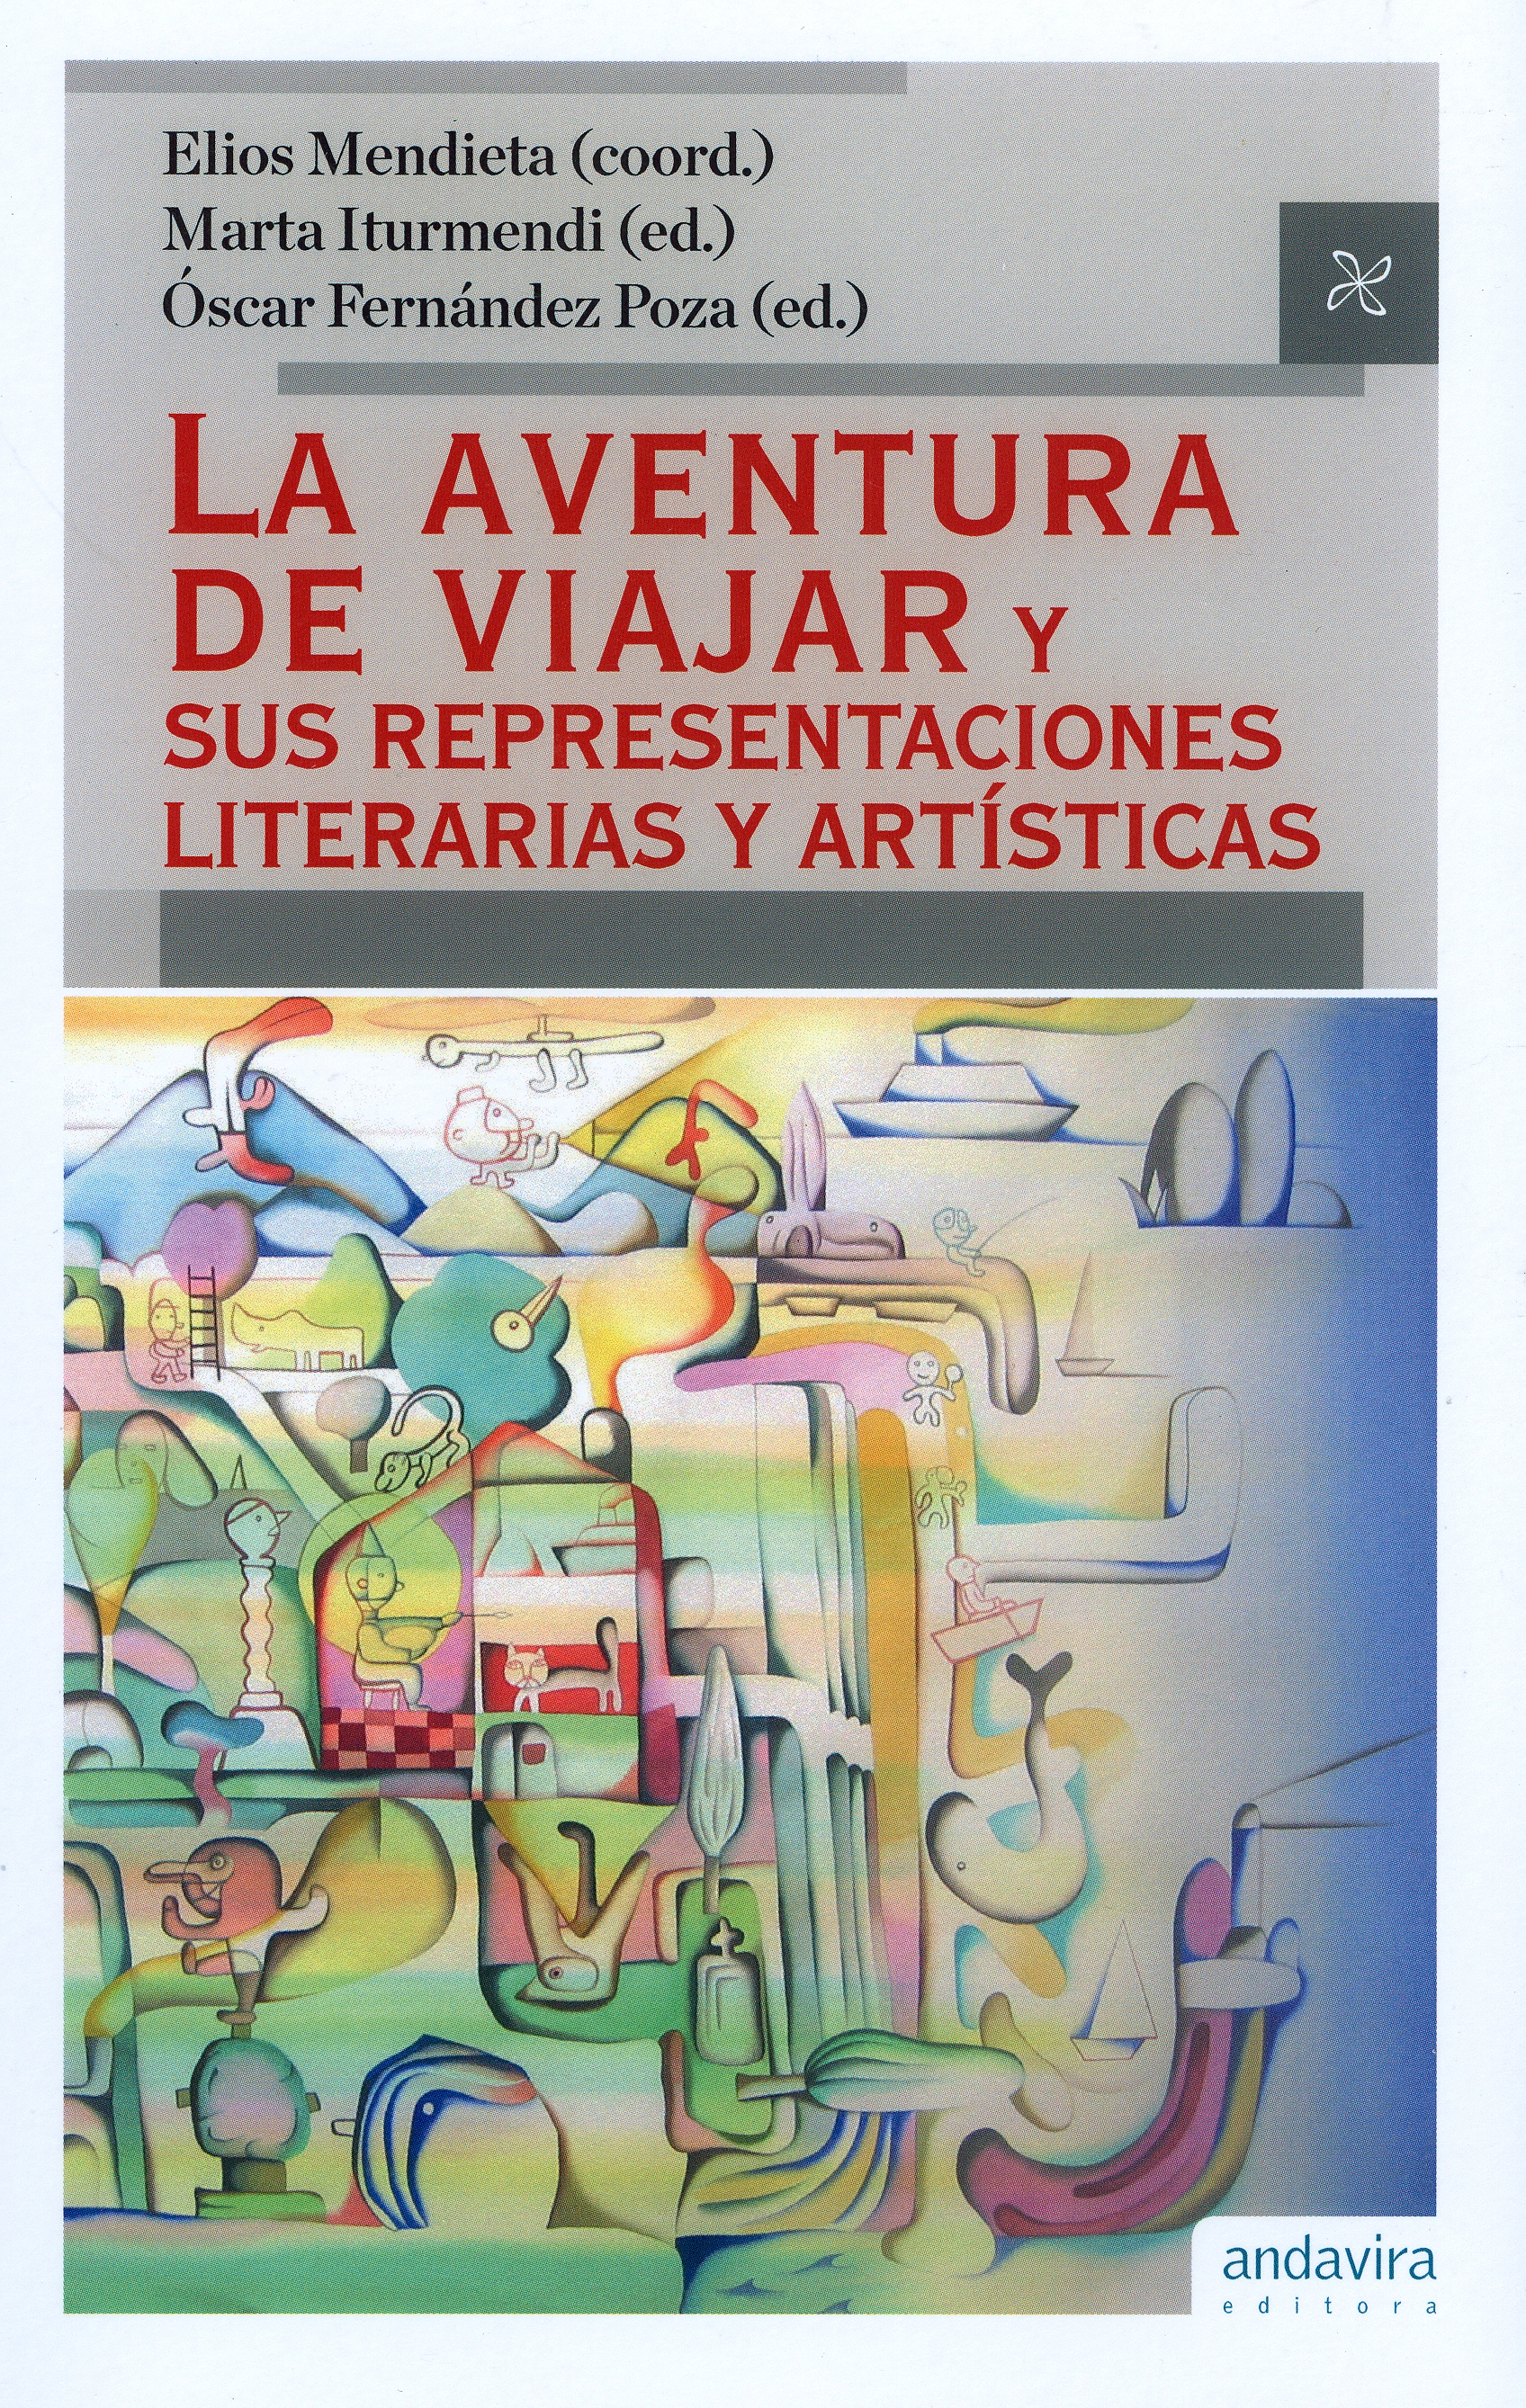 Imagen de portada del libro La aventura de viajar y sus representaciones literarias y artísticas